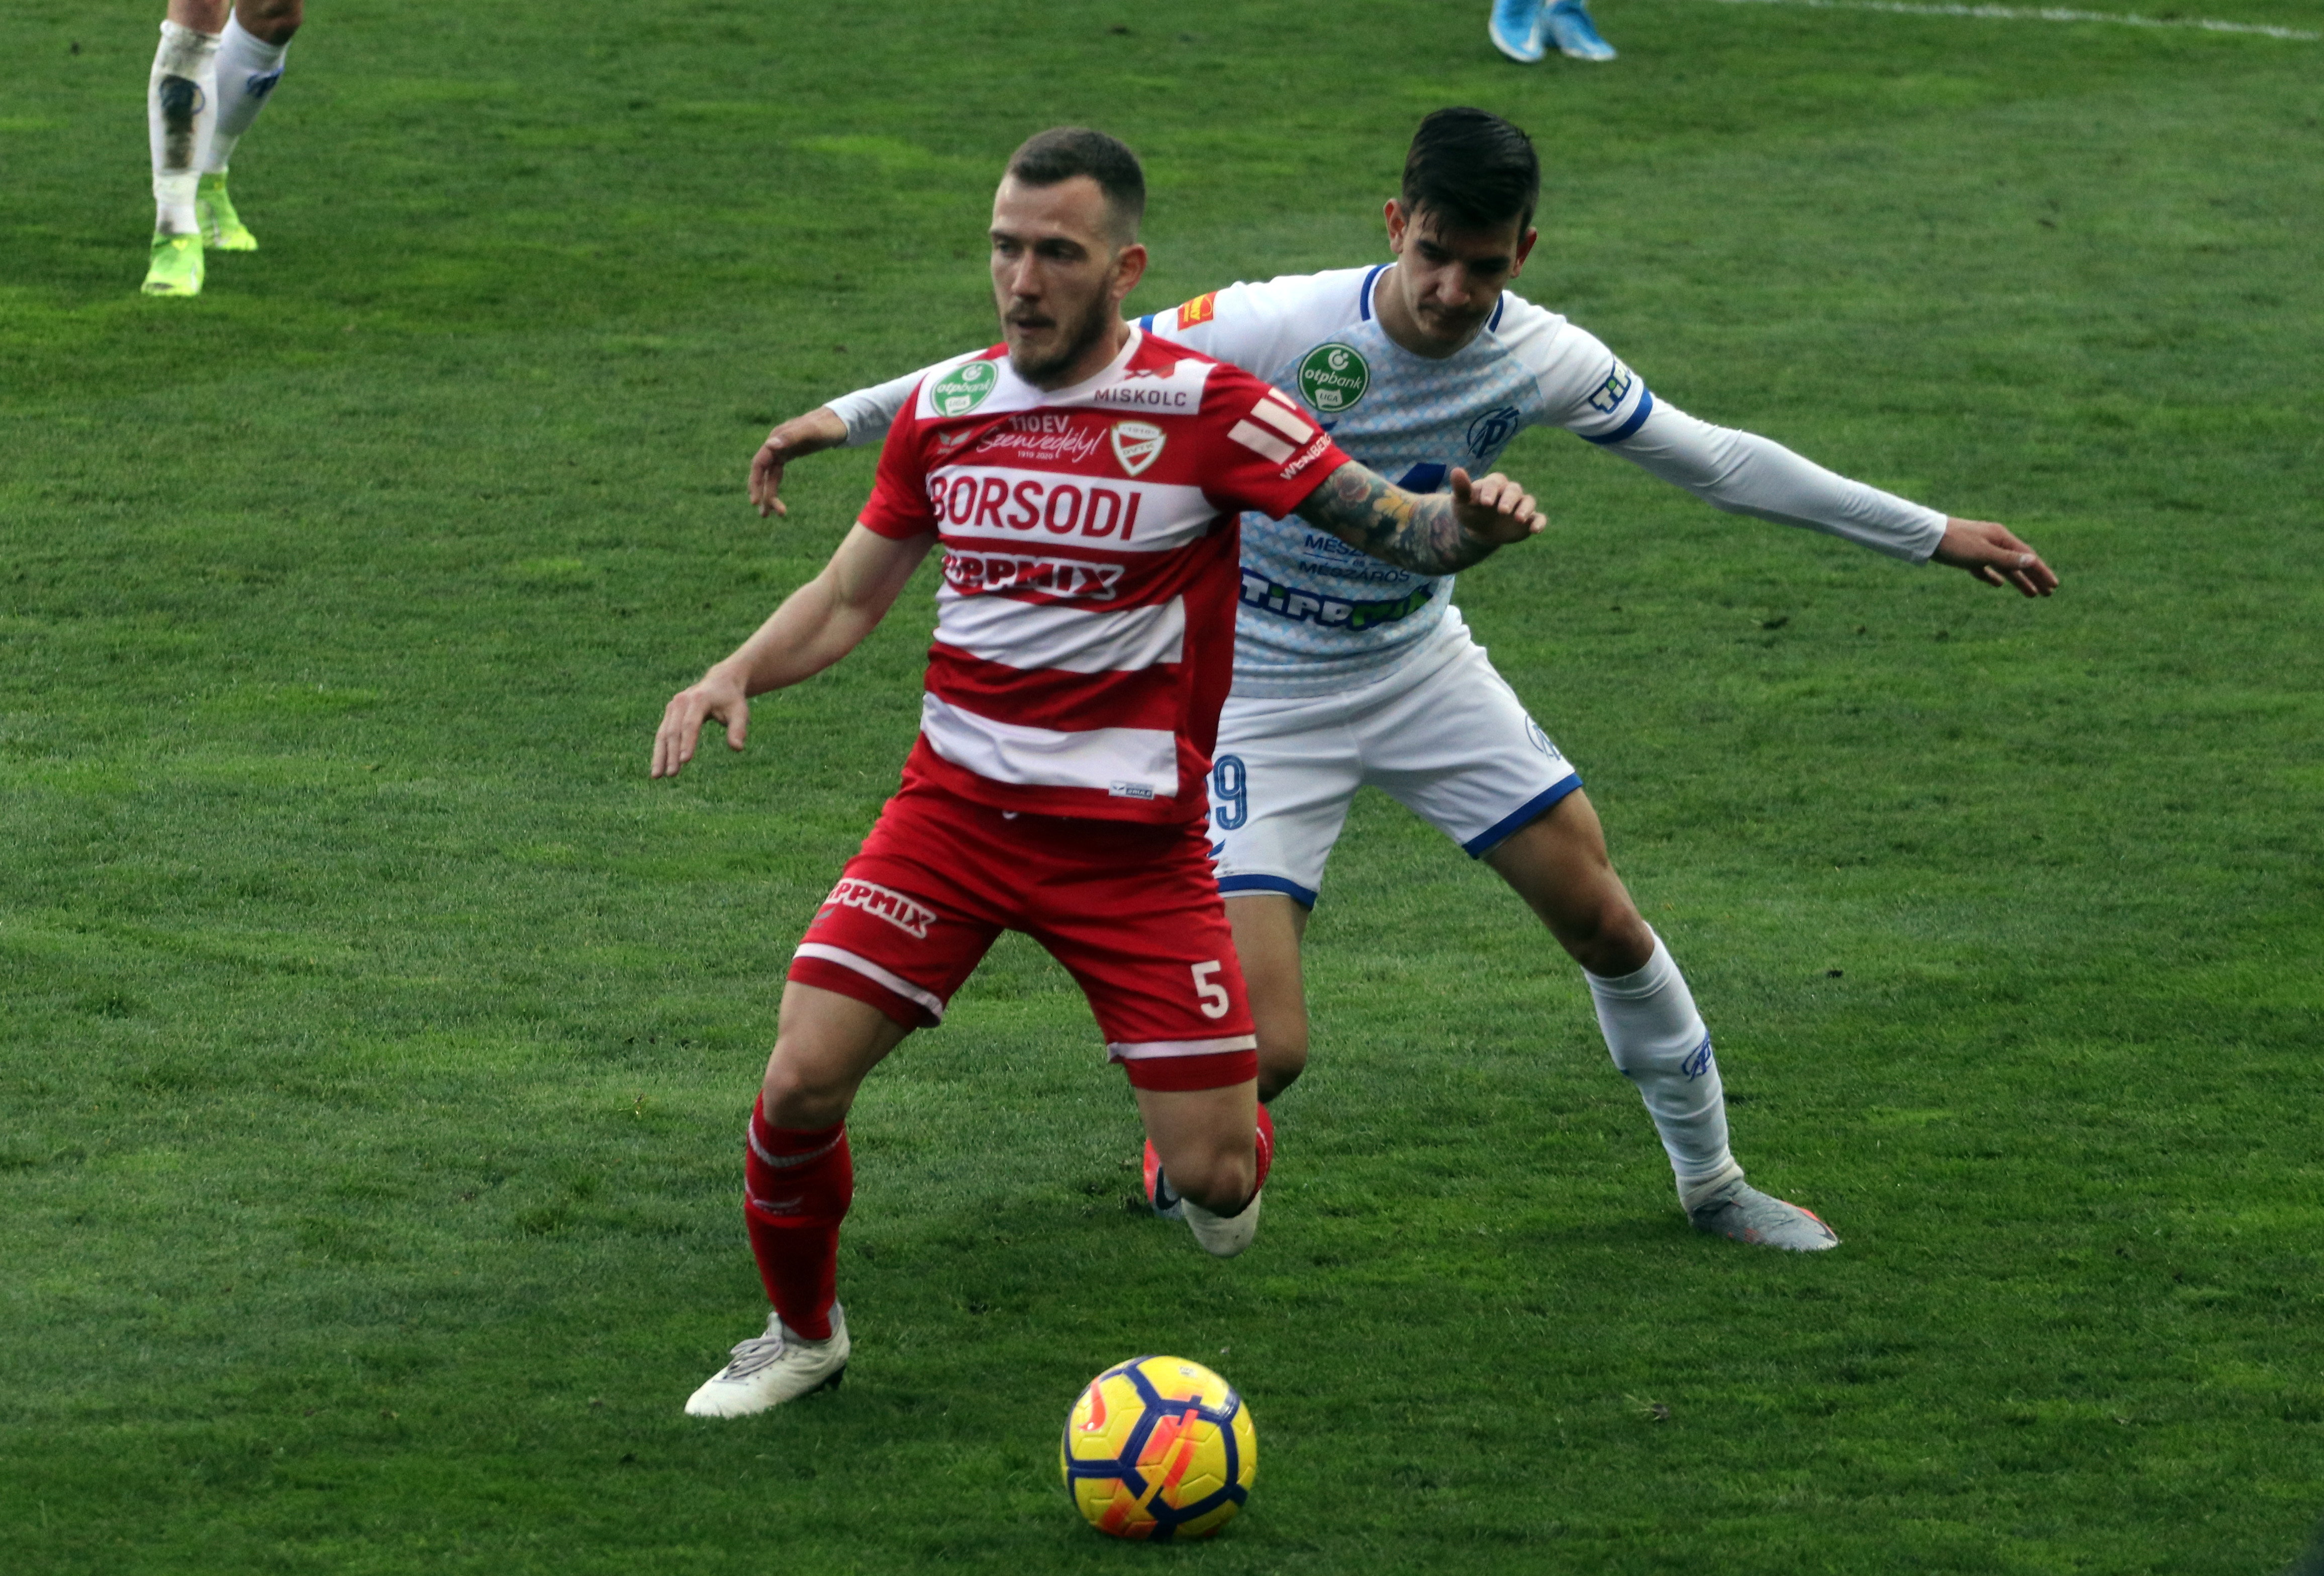 A miskolci Augusto Max (b) és Deutsch László, a  Puskás játékosa (j) az OTP Bank Liga 30. fordulójában játszott Diósgyőri VTK-Puskás Akadémia FC labdarúgó mérkőzésen Miskolcon 2021. április 21-én.